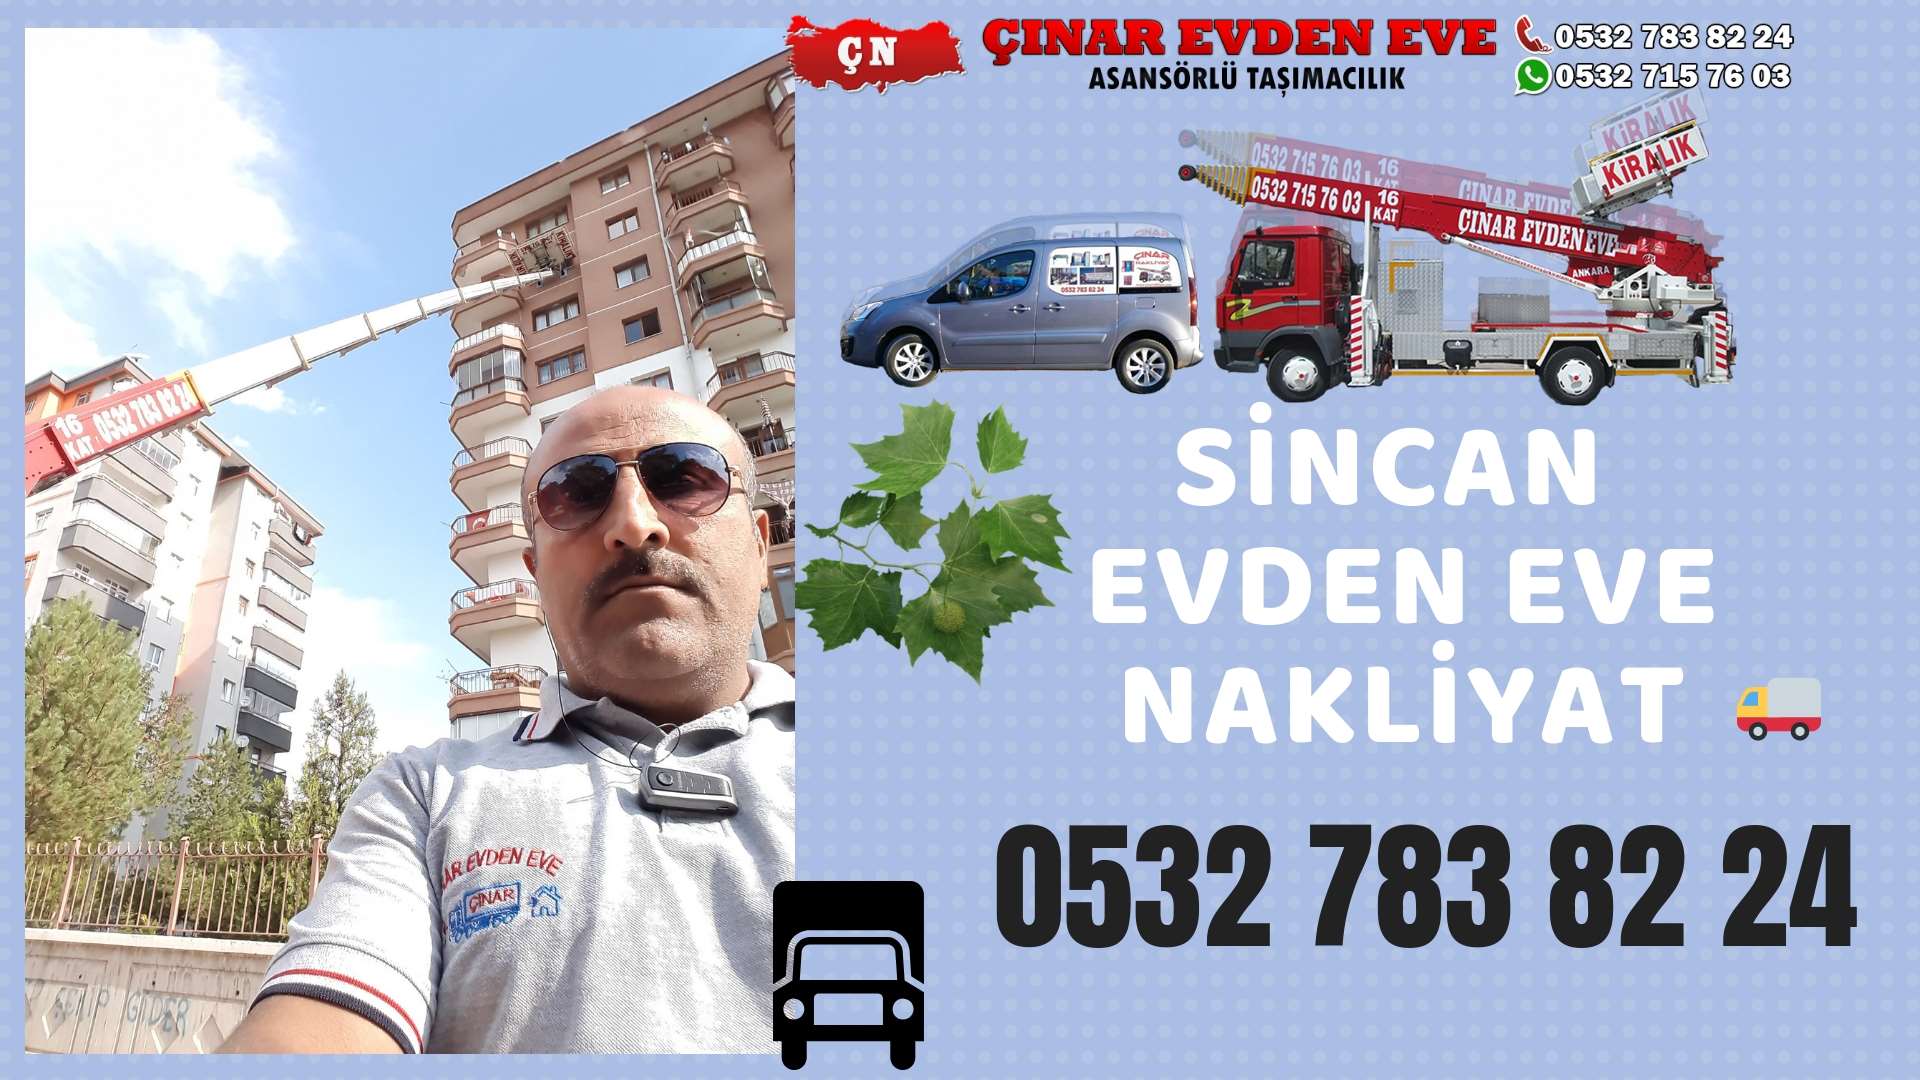 Ankara Yapracık TOKİ Evden Eve Nakliyat, Asansörlü Taşımacılık, Ofis / İş Yeri Taşıma 0532 715 76 03